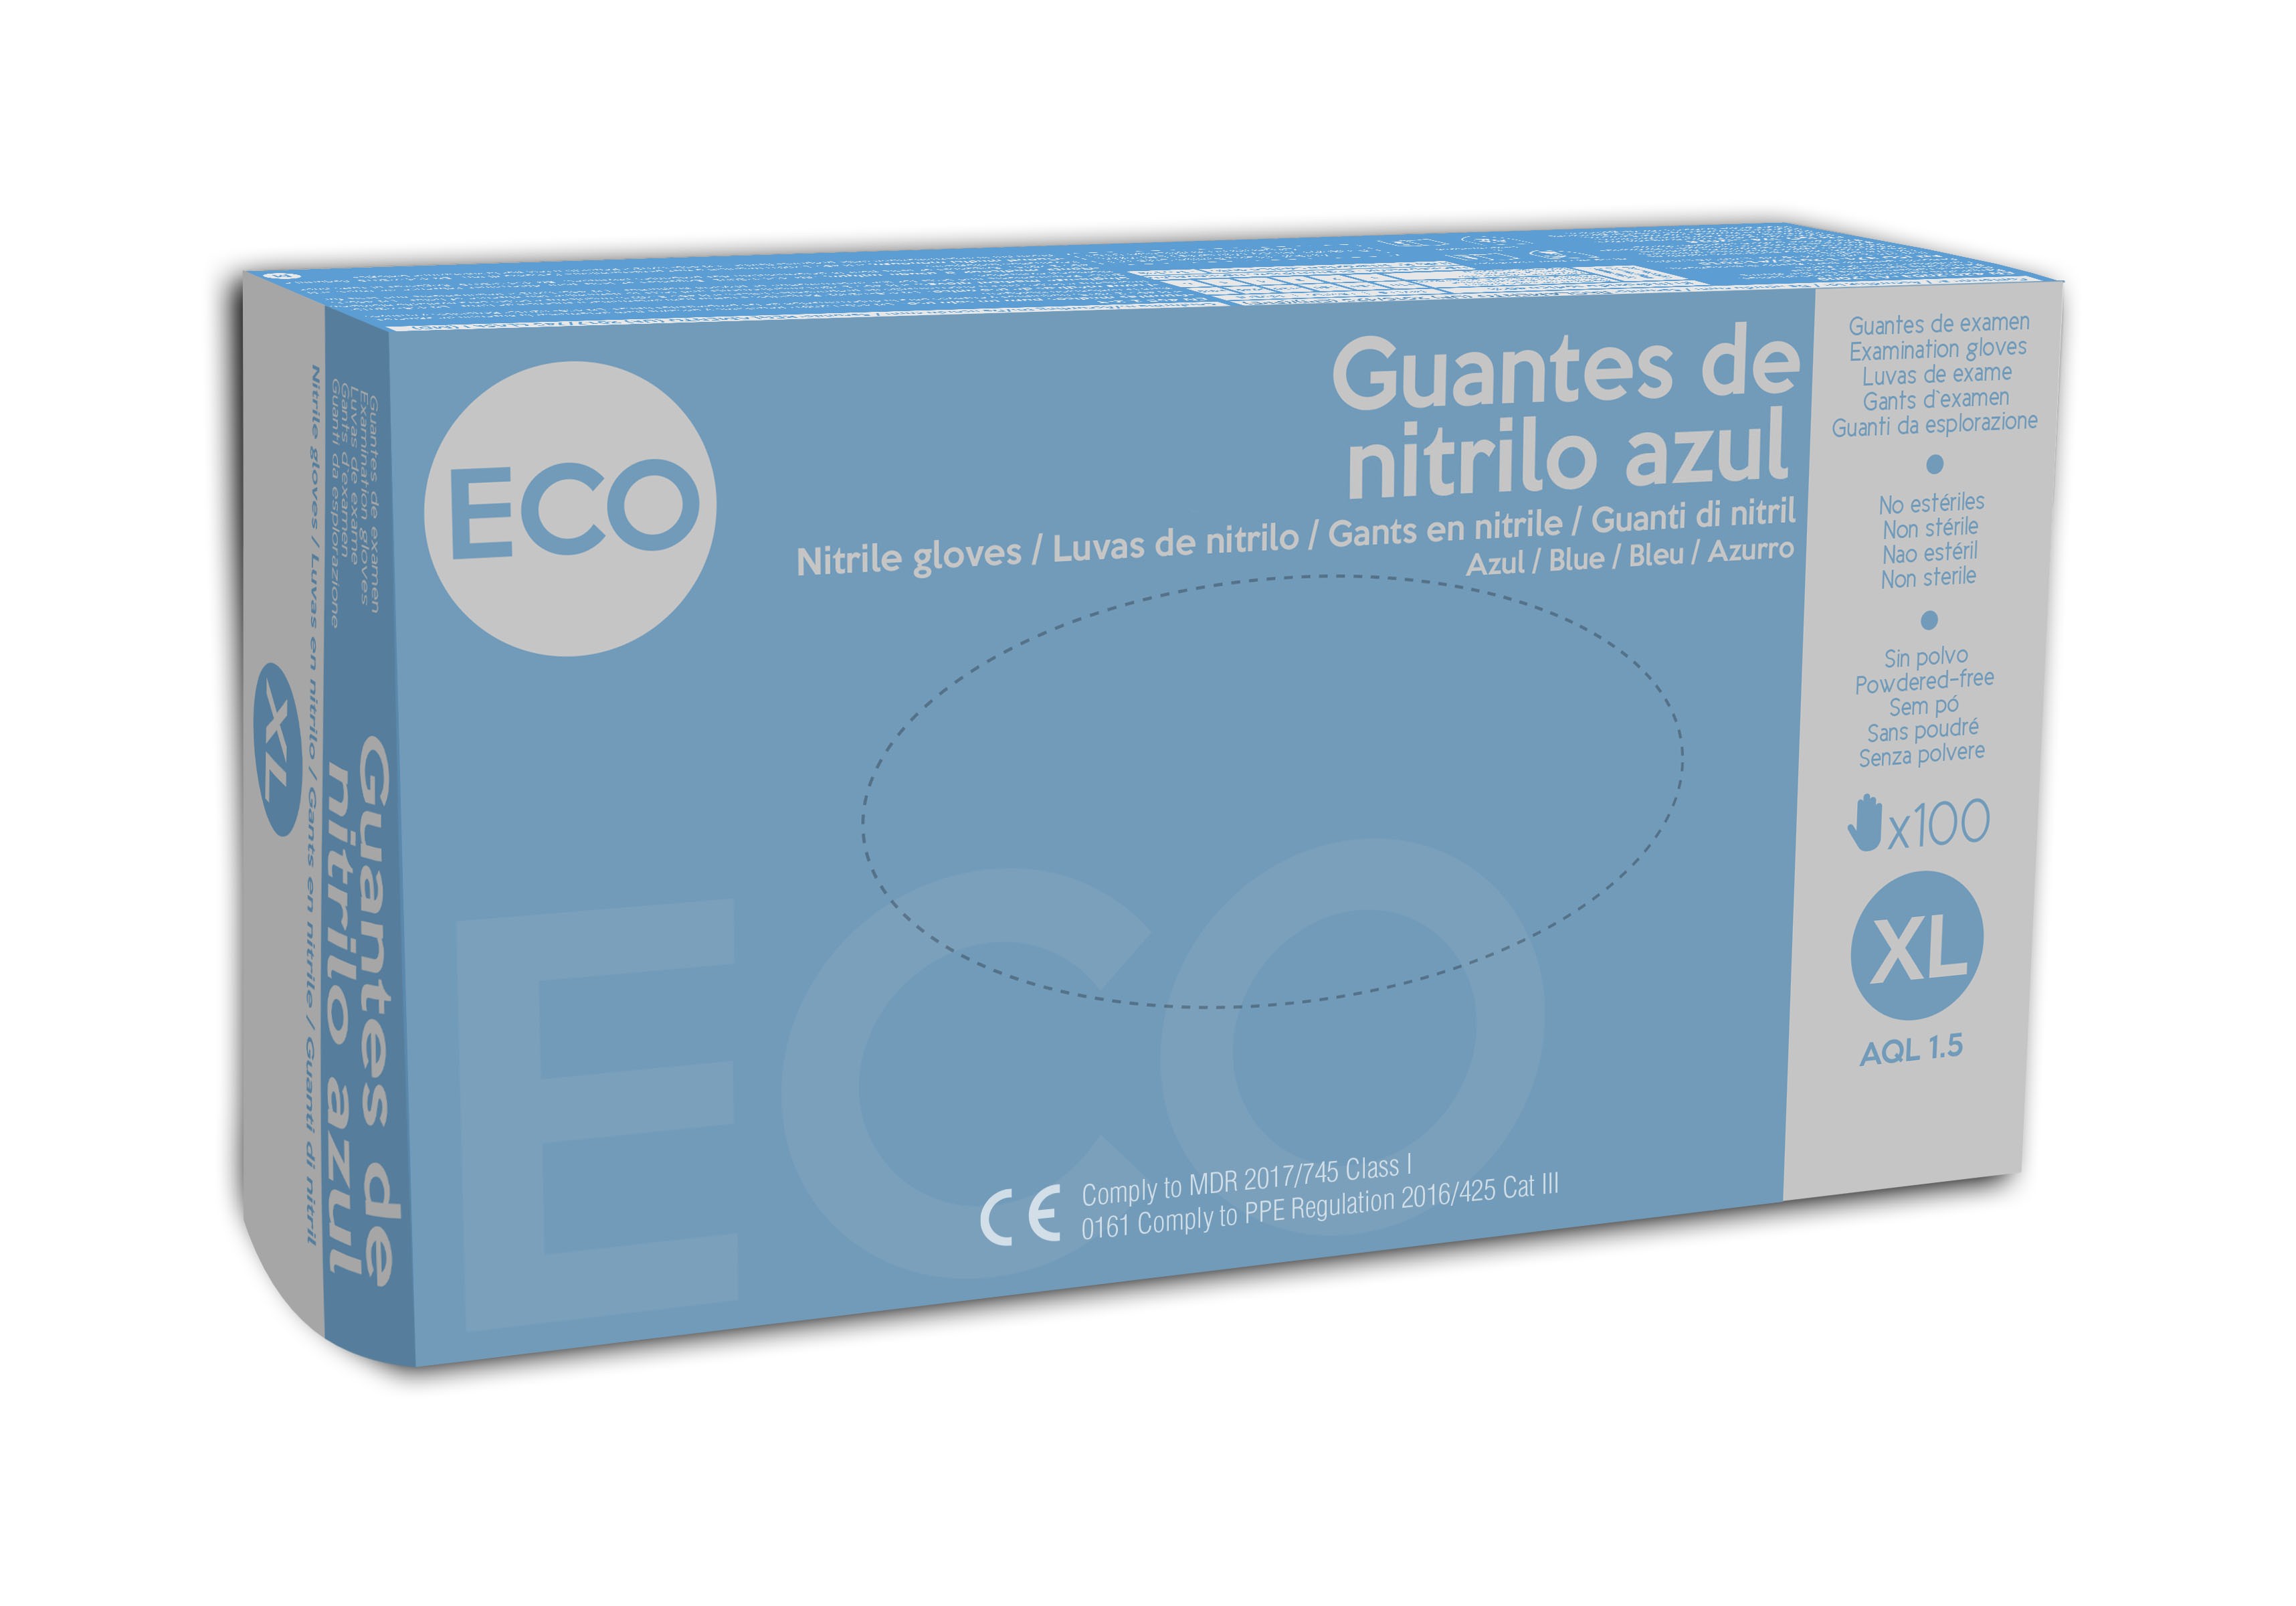 Guantes de Nitrilo ECO s/polvo 3gr, AQL 1.5